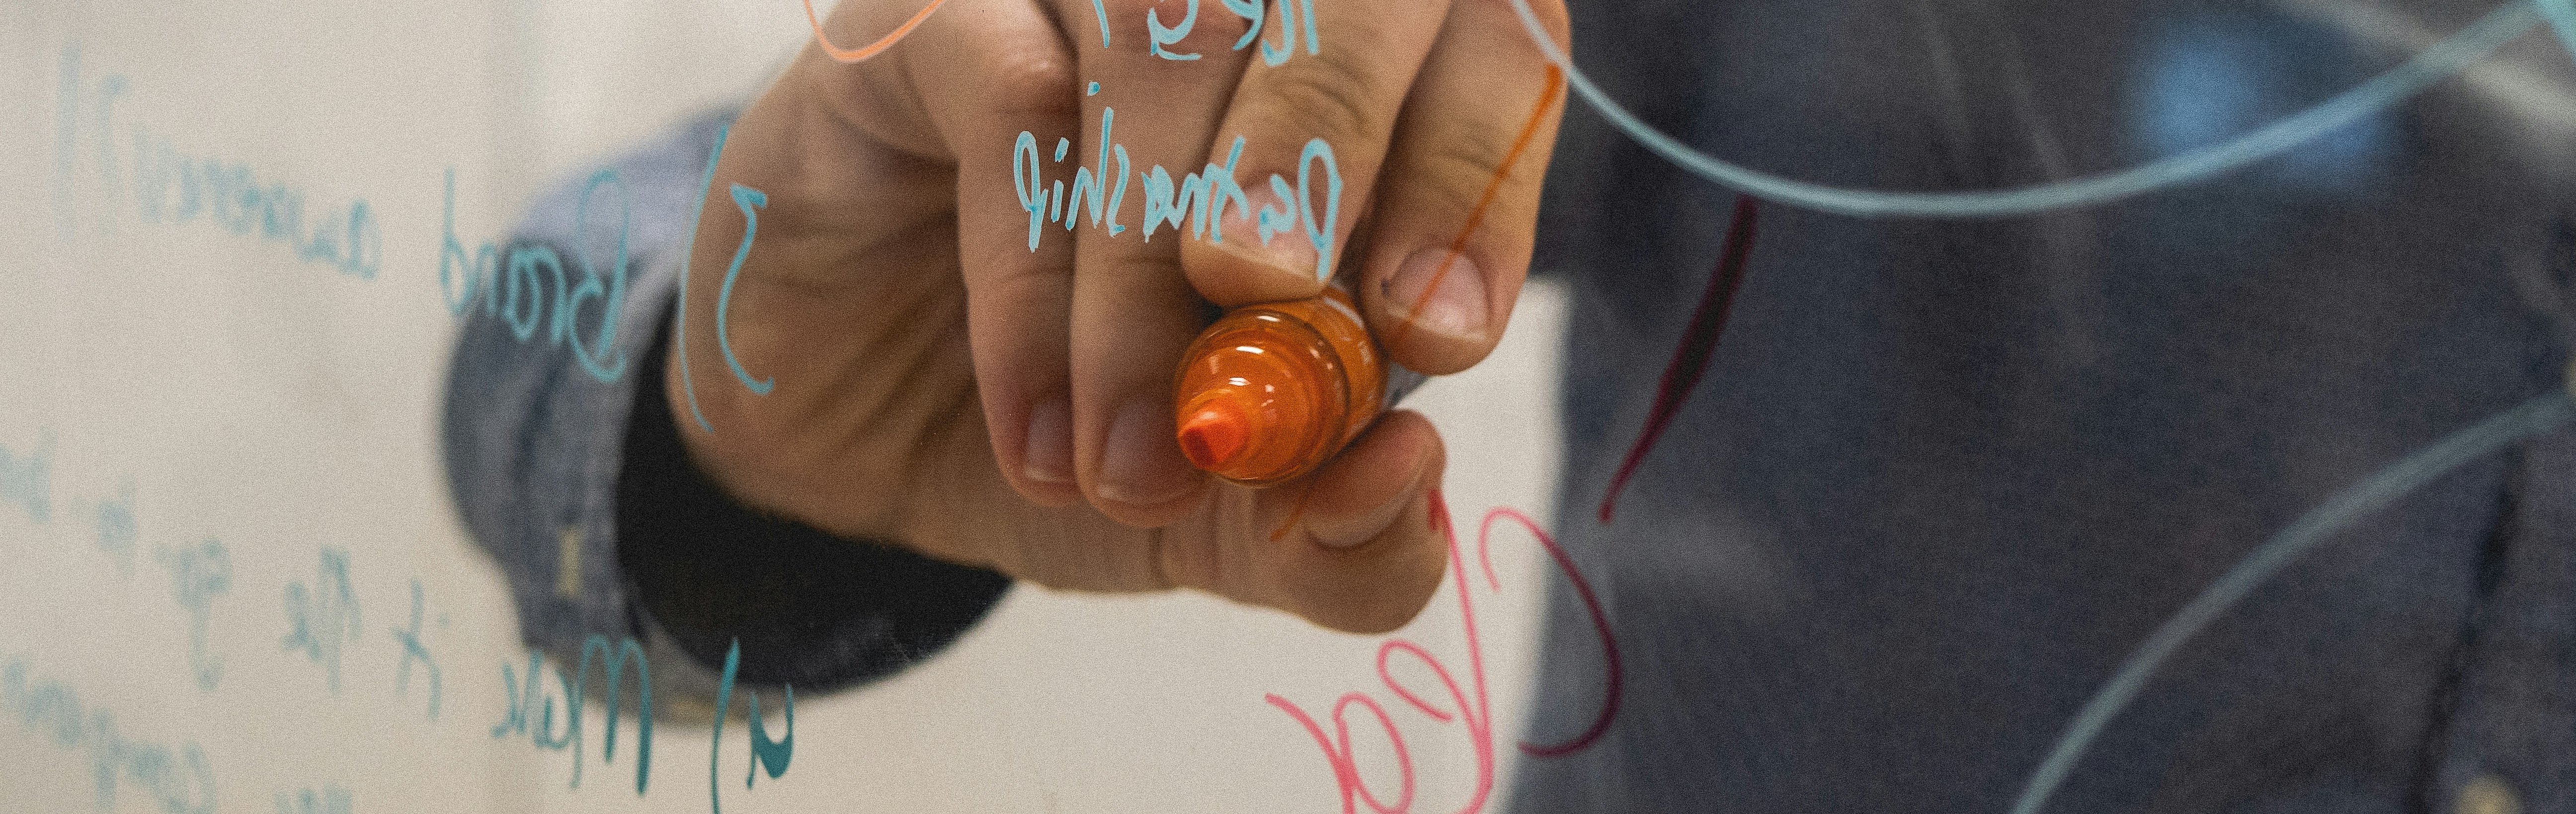 Hand schreibt mit orangenem Stift auf einer durchsichtigen Plexiglasscheibe